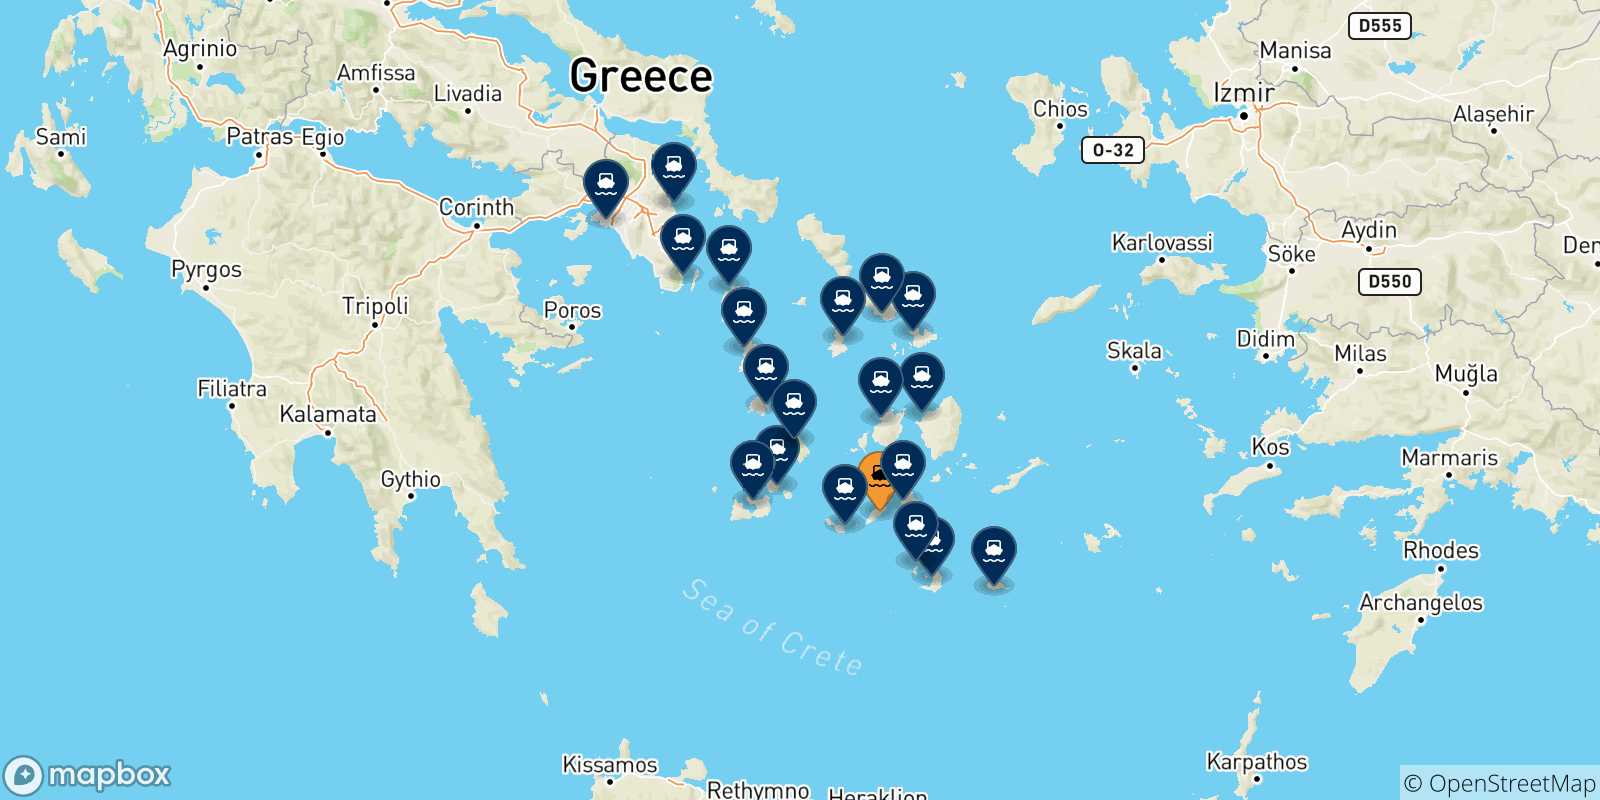 Mappa delle possibili rotte tra Sikinos e la Grecia